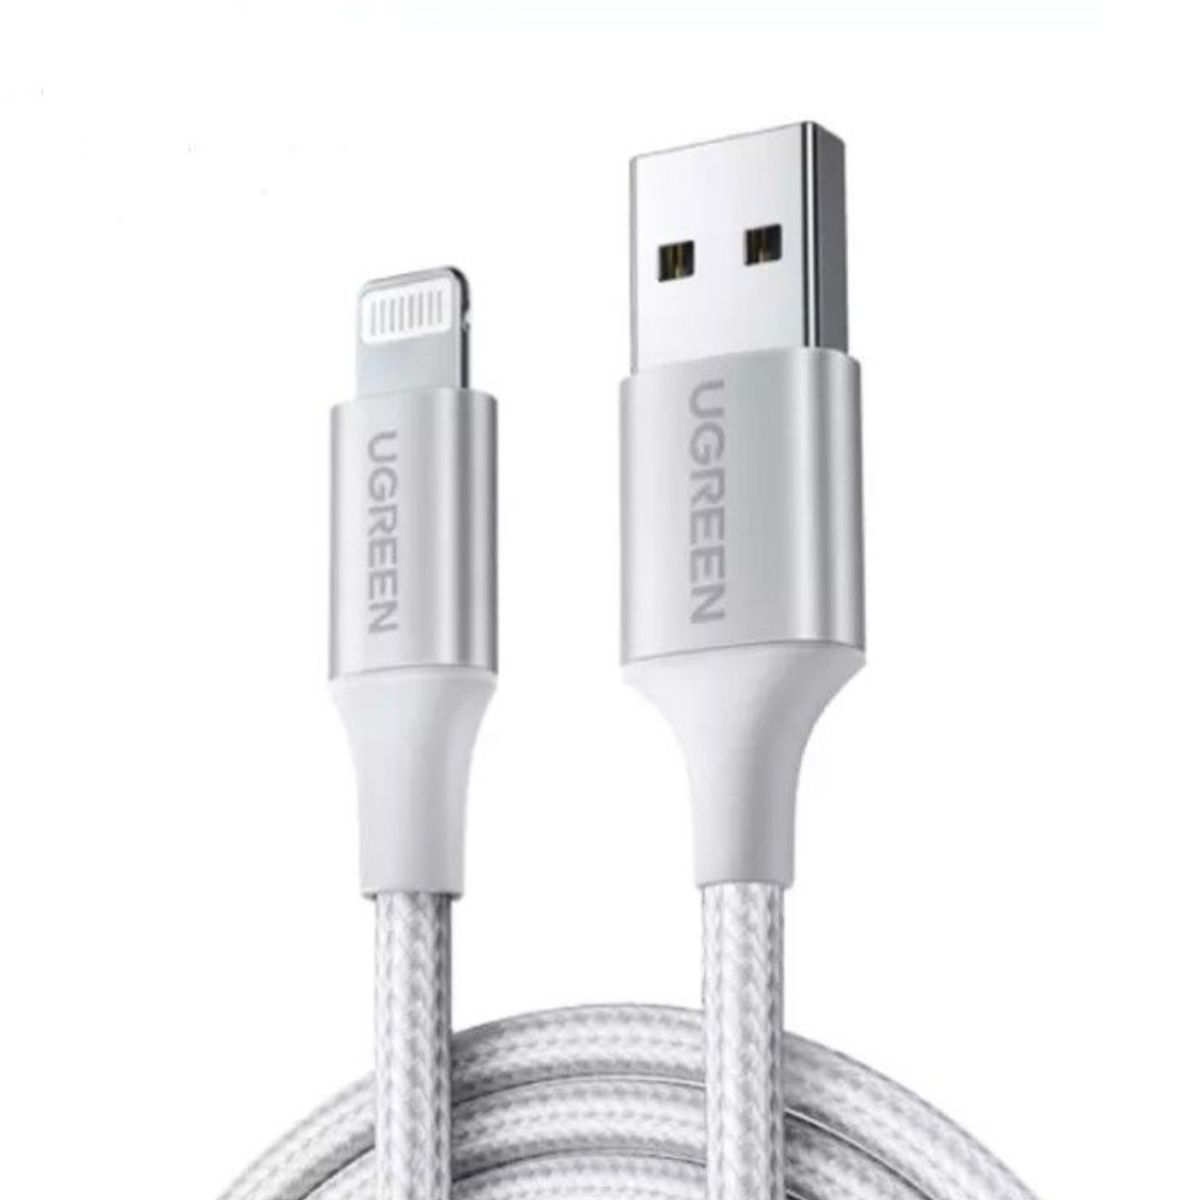 Cáp sạc 1m USB Lightning Ugreen US199, 60161 màu bạc, tốc độ truyền tải tối đa 480mbps